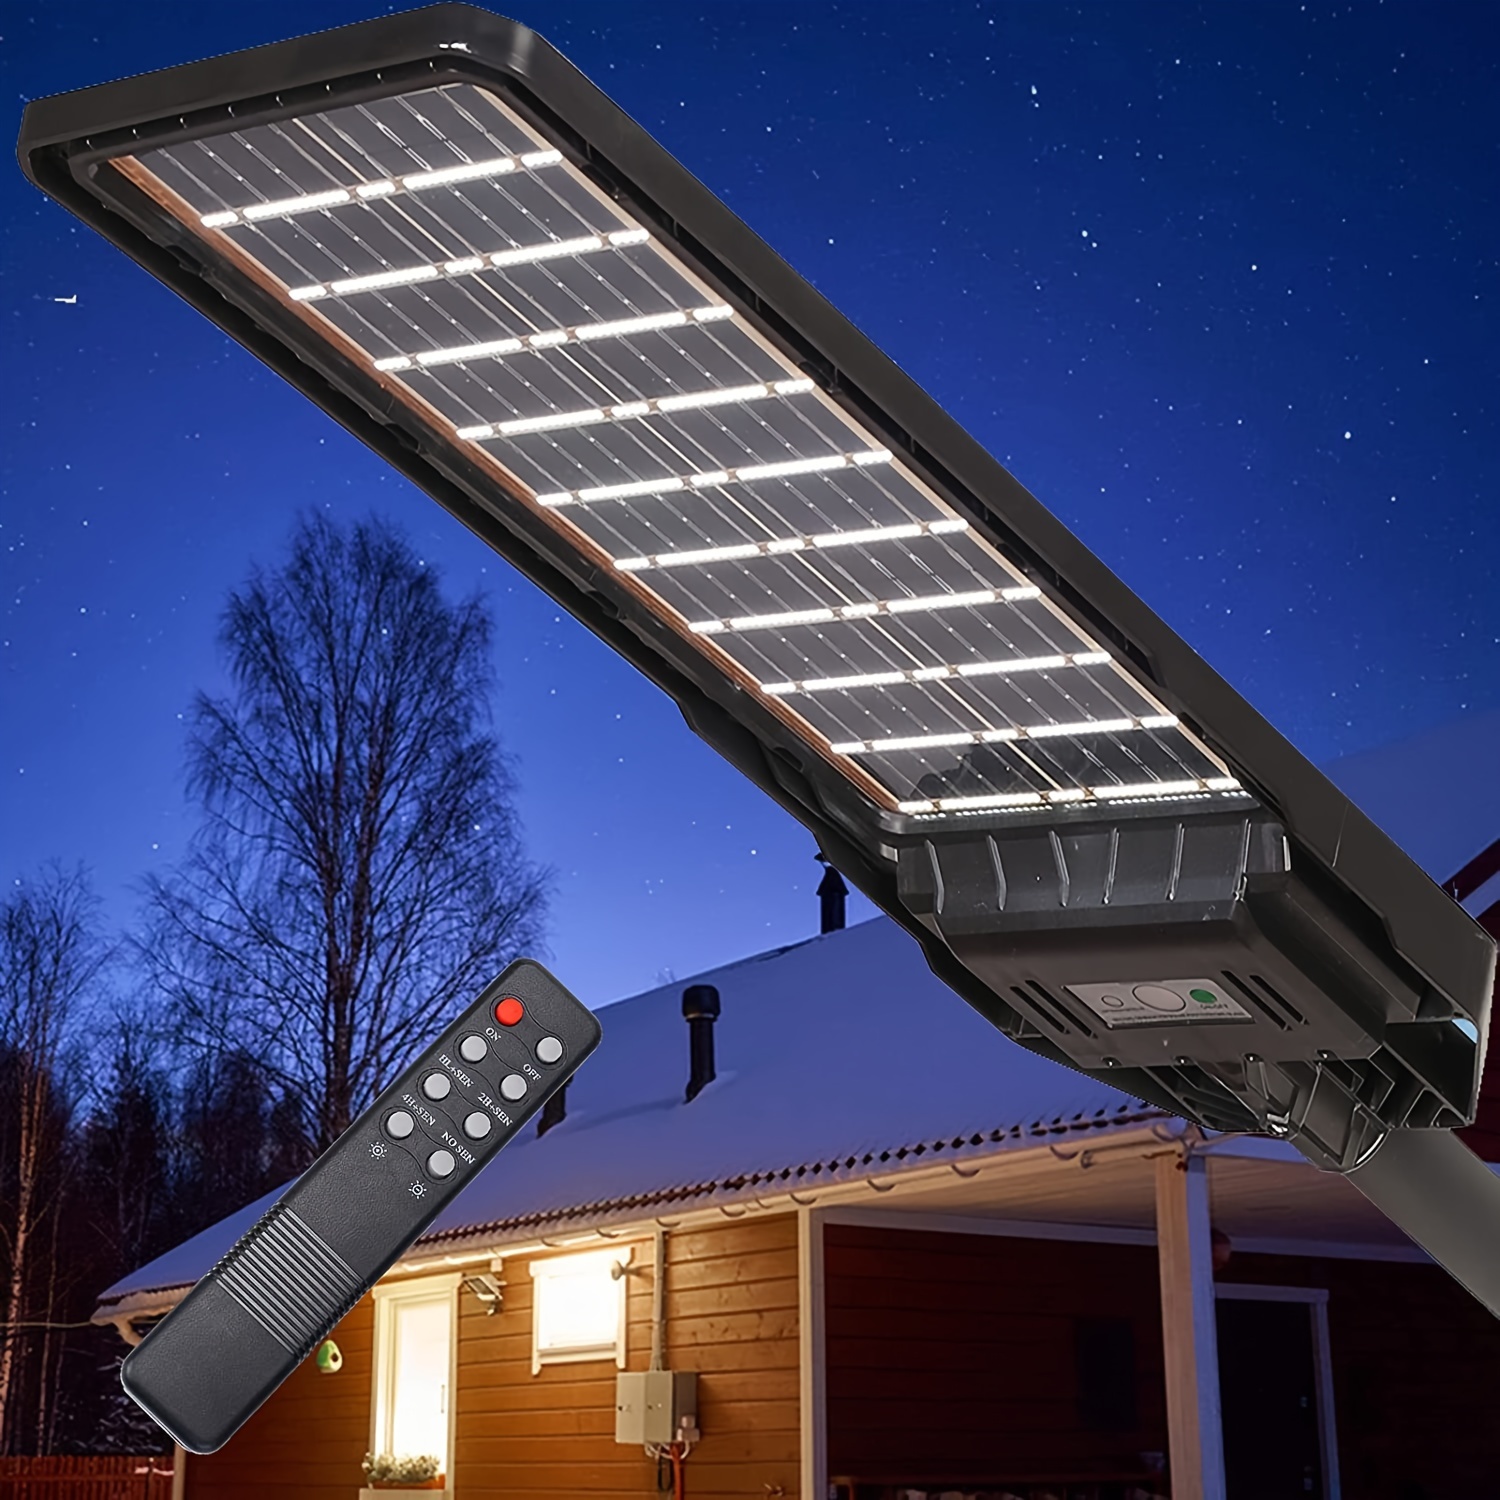 Luces de calle solares LED de 400 W para exteriores, luz de inundación de  seguridad del atardecer al amanecer con control remoto y poste,  inalámbrico